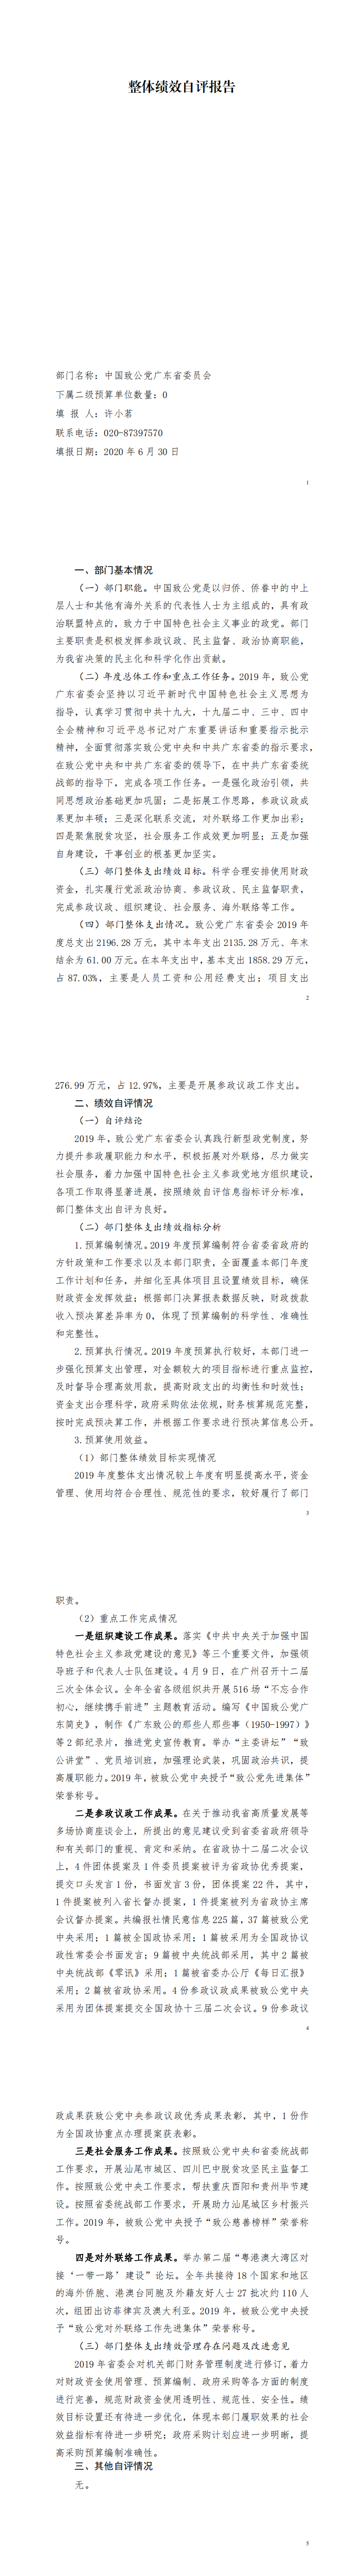 2019年中国致公党广东省委员会部门整体支出绩效自评_00.png